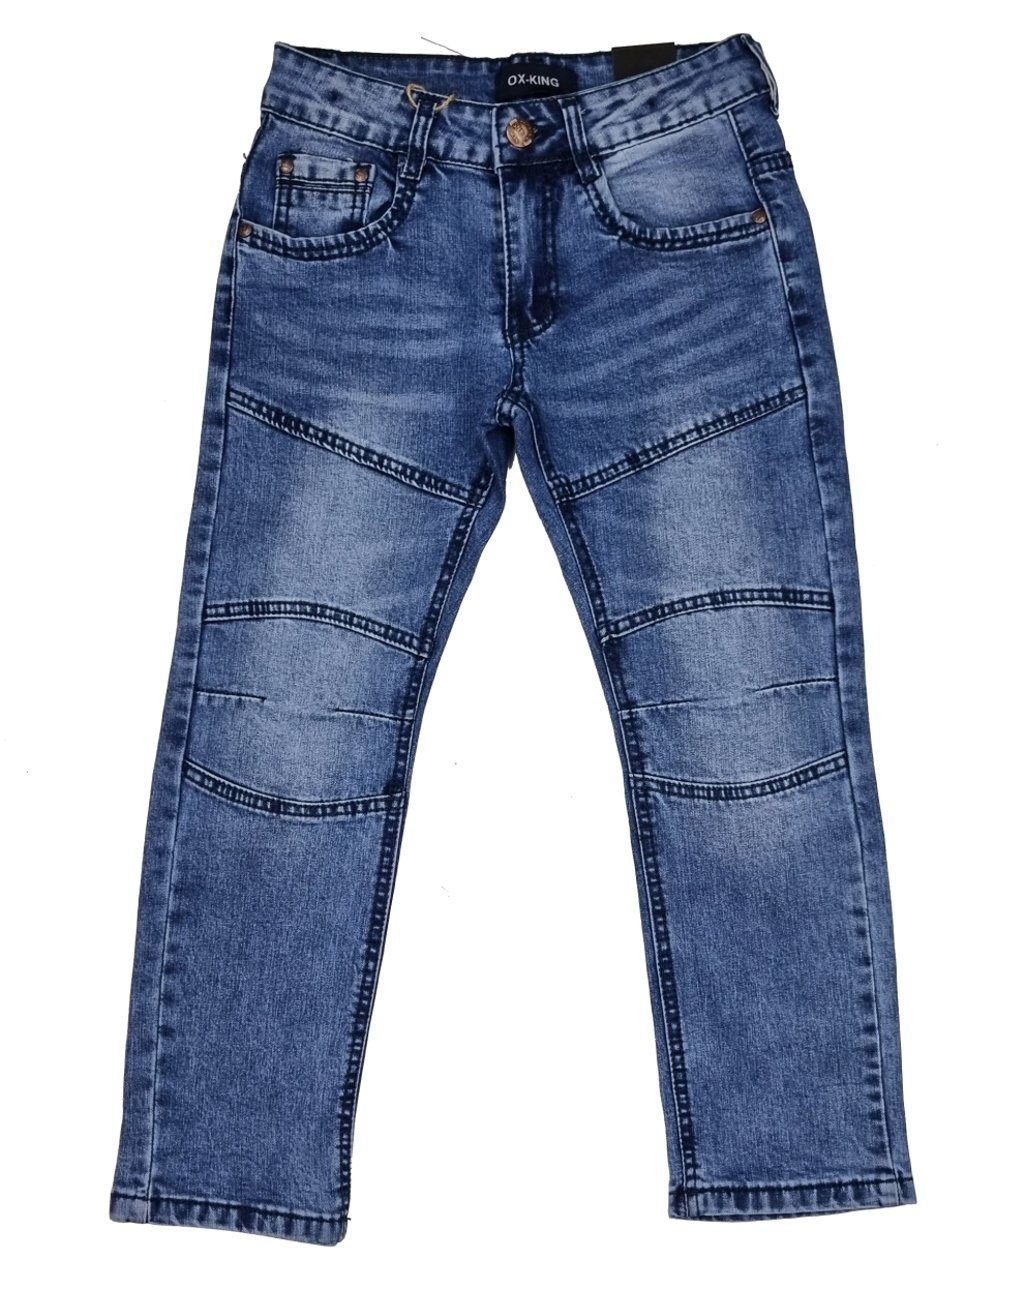 Fashion Boy Bequeme Jeans Jungen Hose J626 Jeans Jeanshose, Kinder Kinderhose